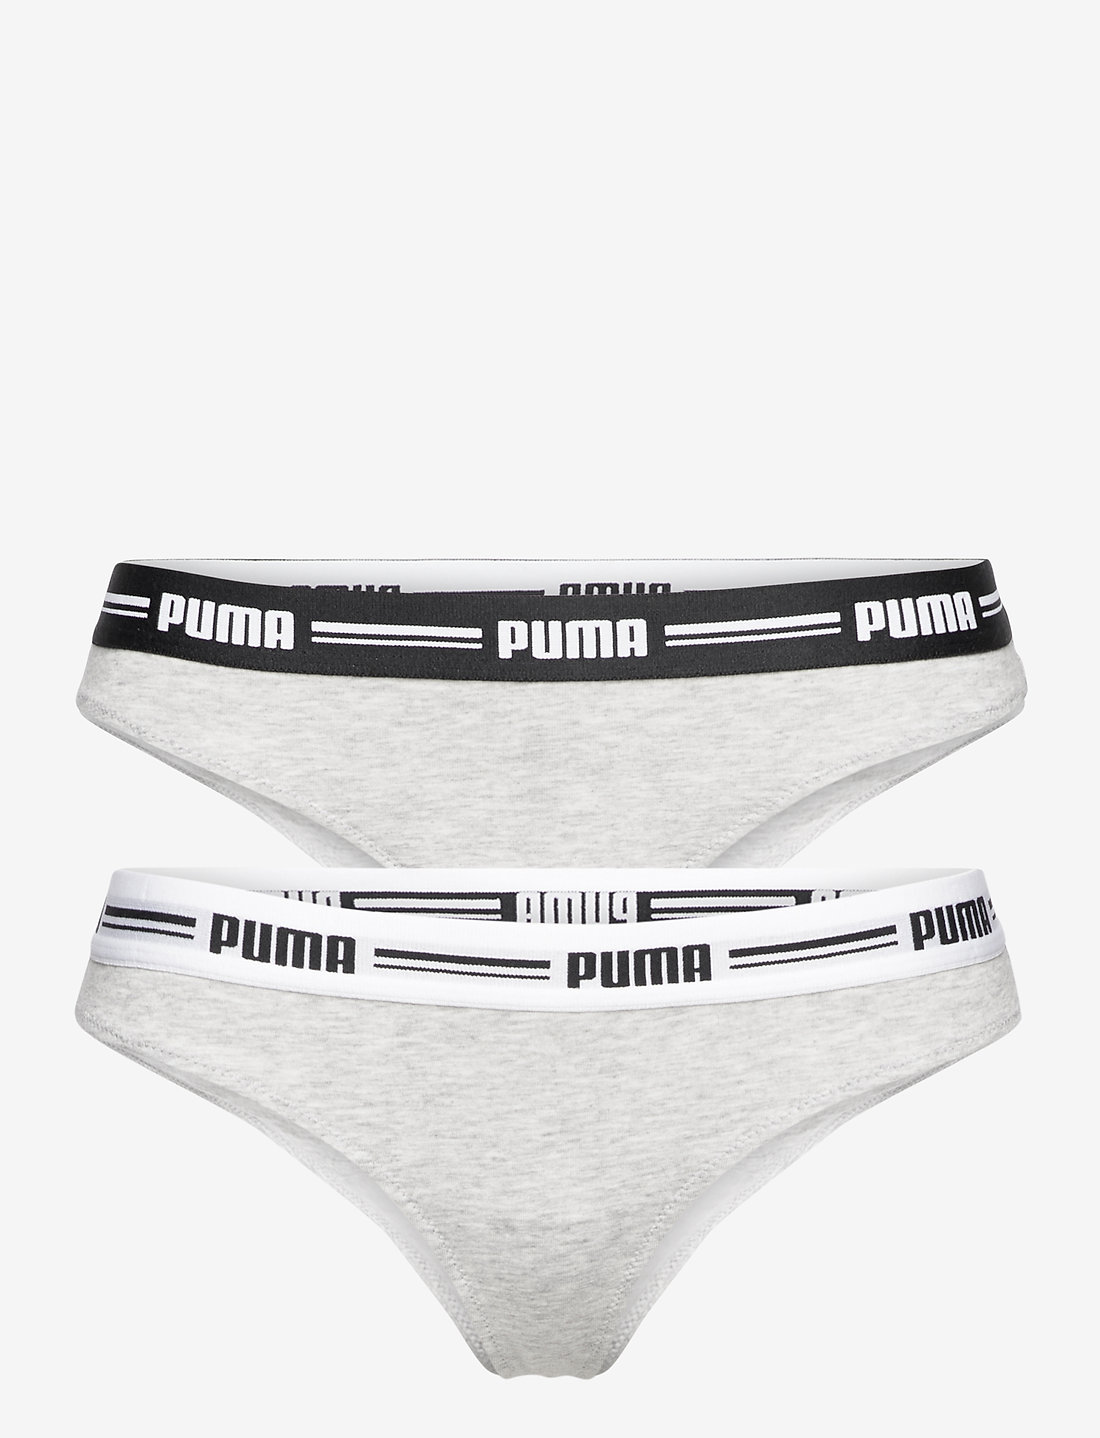 PUMA Puma Women String 2p Hang – panties – shop at Booztlet